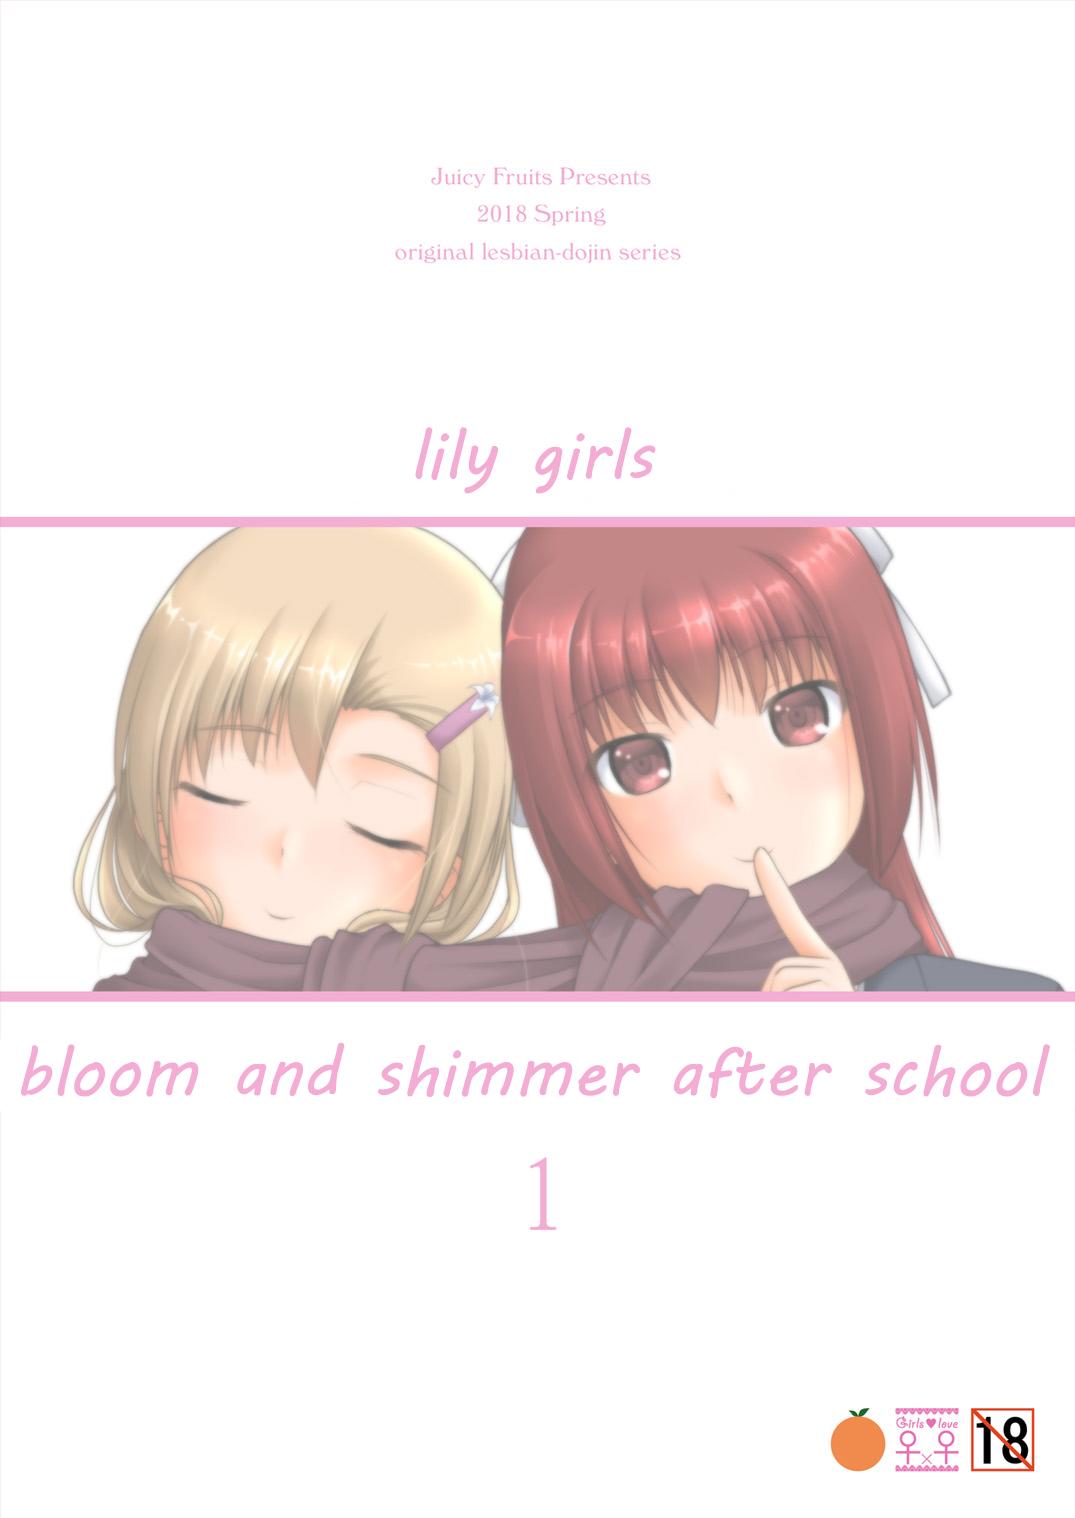 Yurikko wa Houkago ni Yurameki Hanasaku 1 | lily girls bloom and shimmer after school 1 35